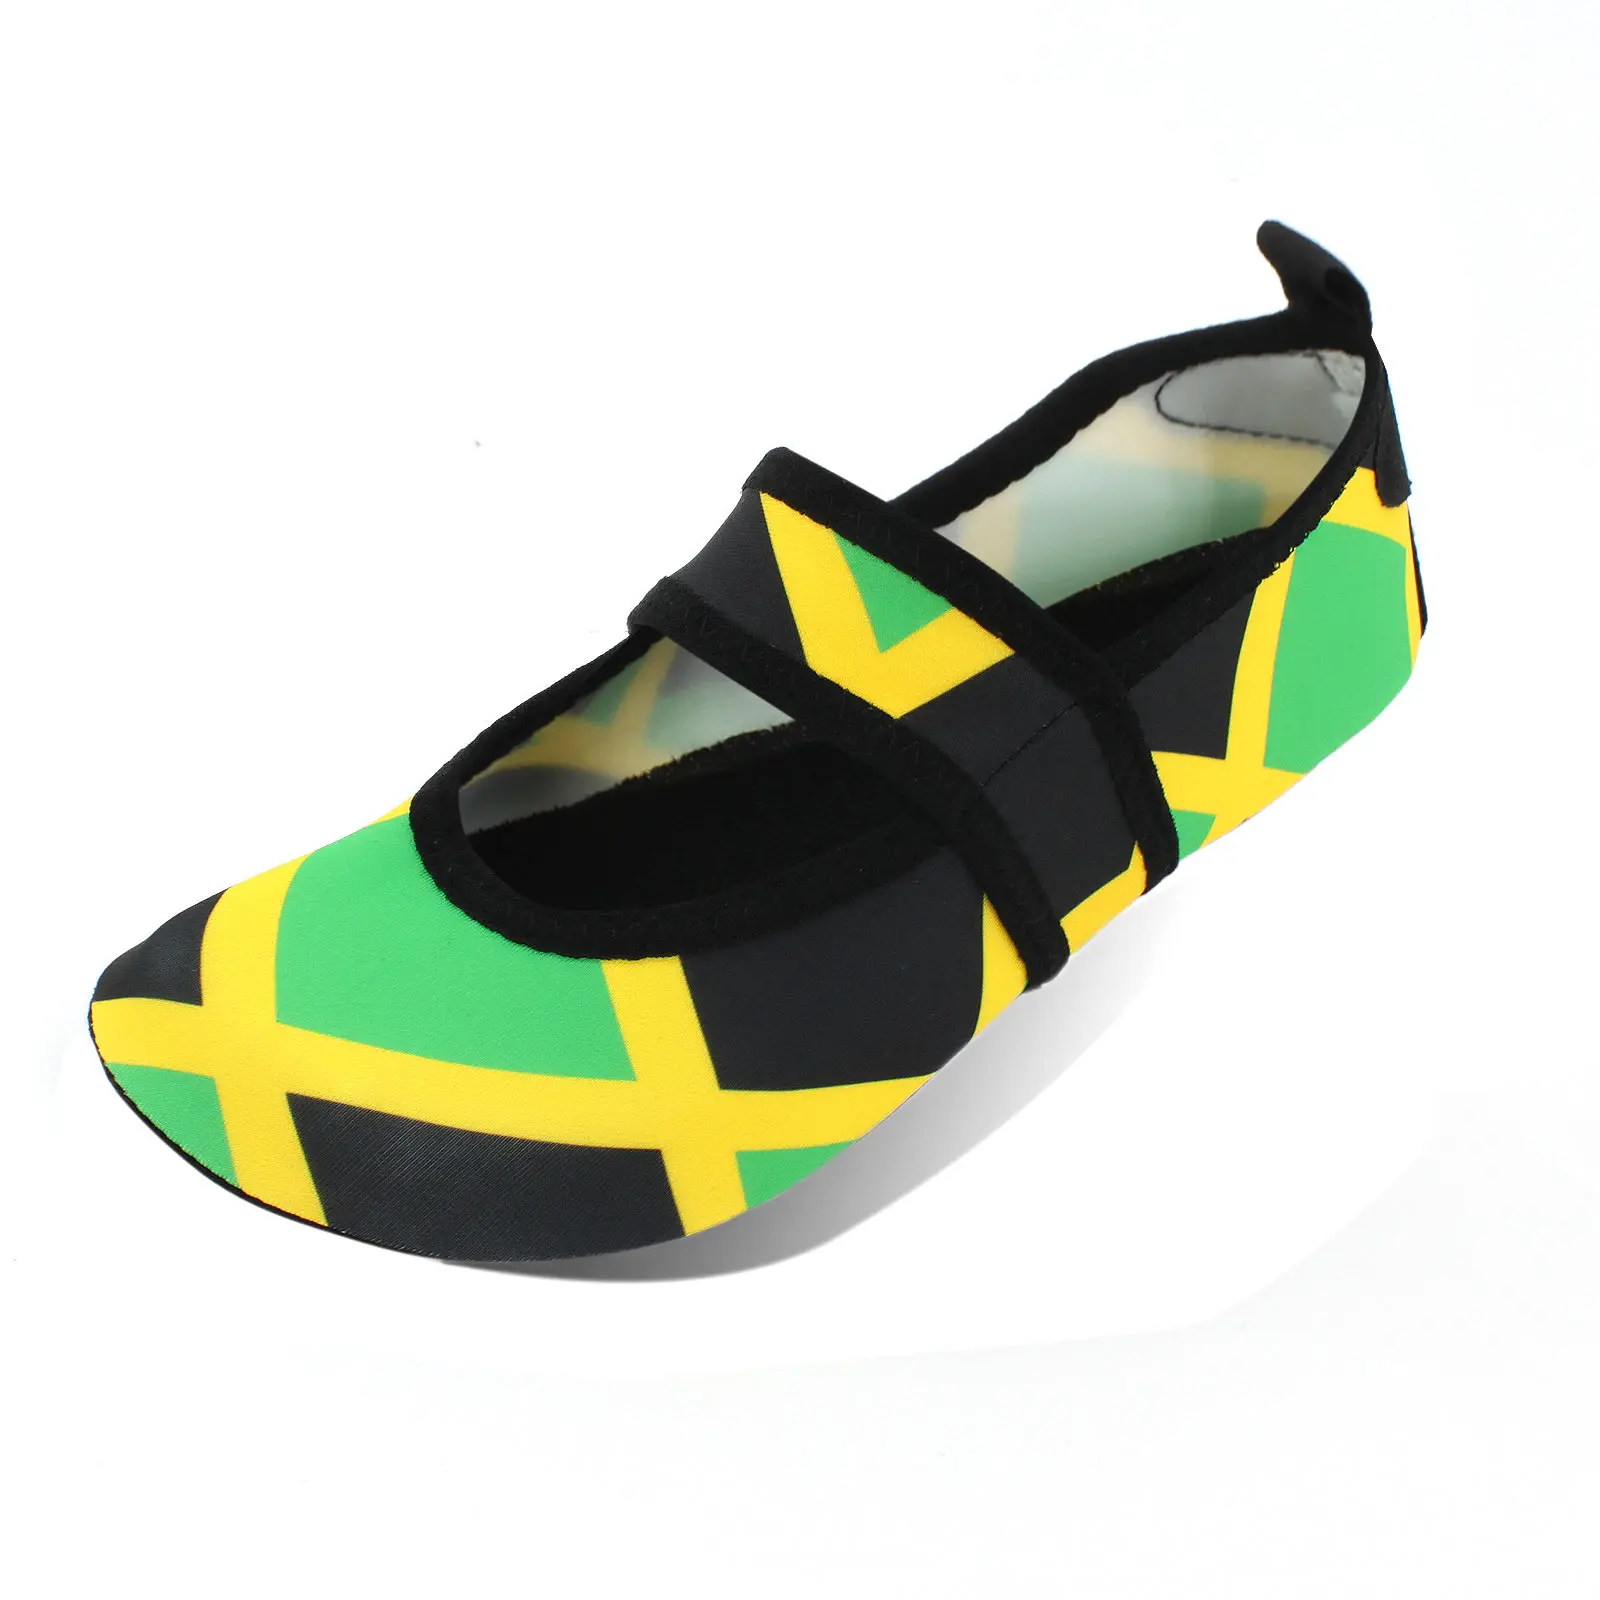 Voda boty pro ženy rychlý suchý plavat pláž boty obuv pro sport cestovní tanec outdoorové surfování joga bilanční rok jamajka standarta